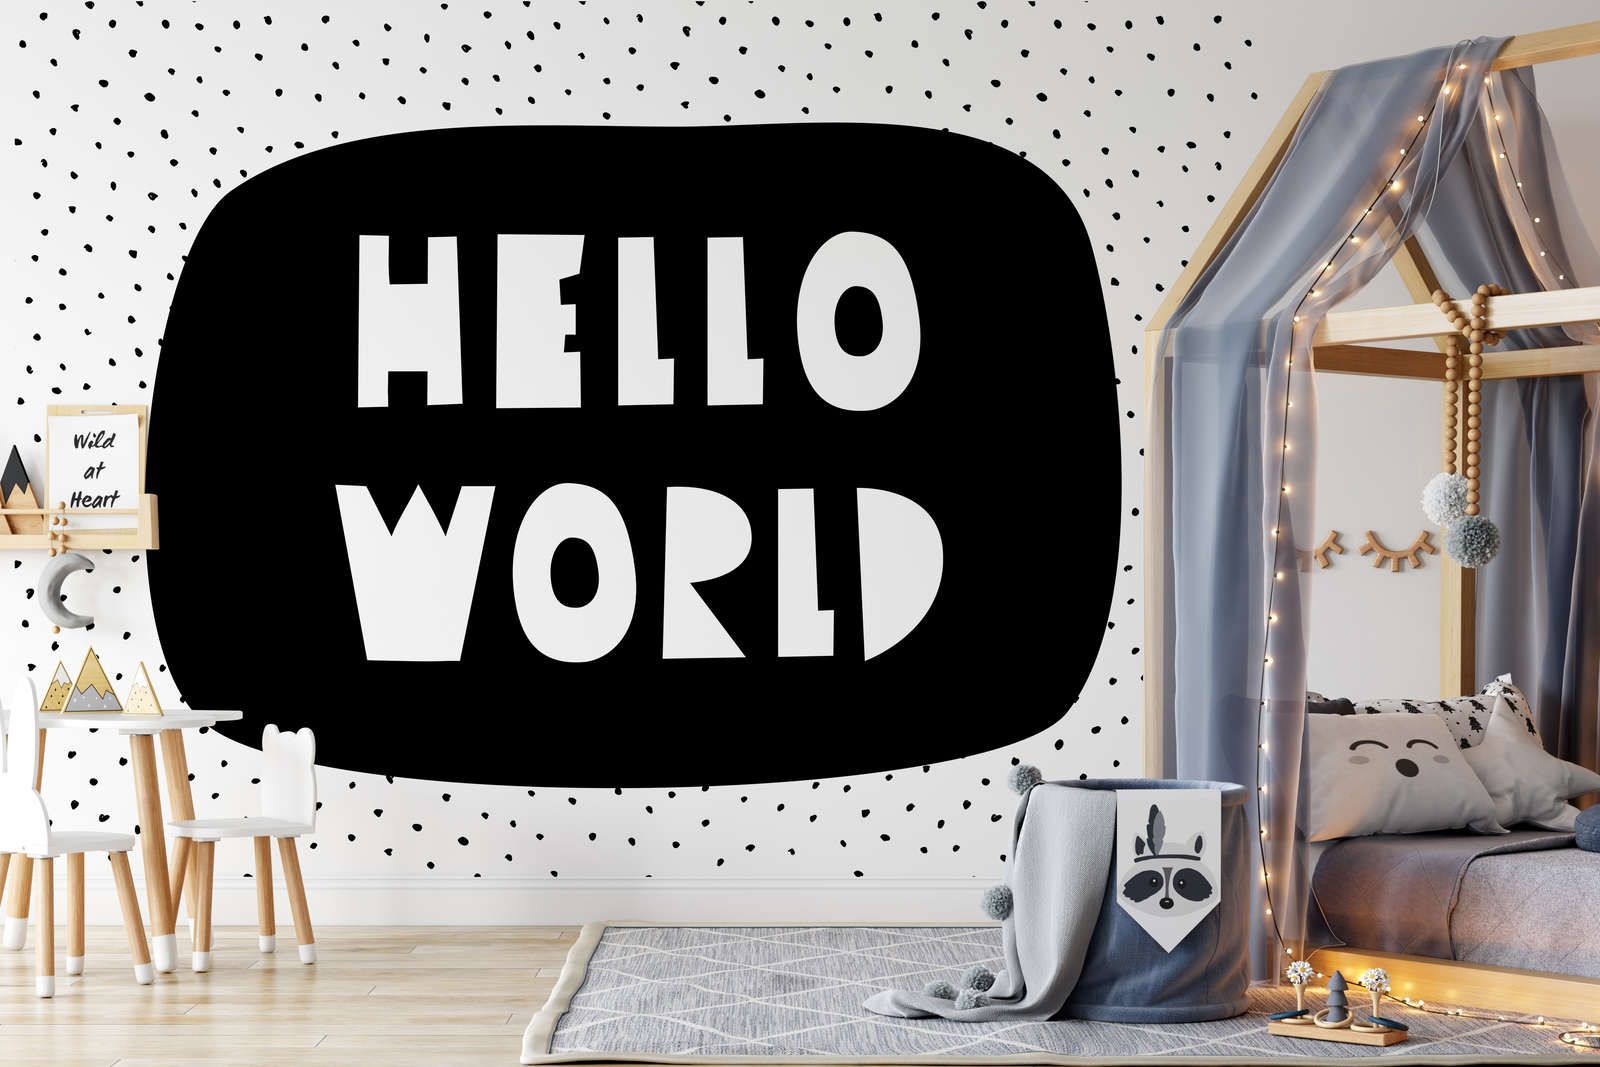             Fotomurali per la camera dei bambini con la scritta "Hello World" - Materiali non tessuto liscio e leggermente lucido
        